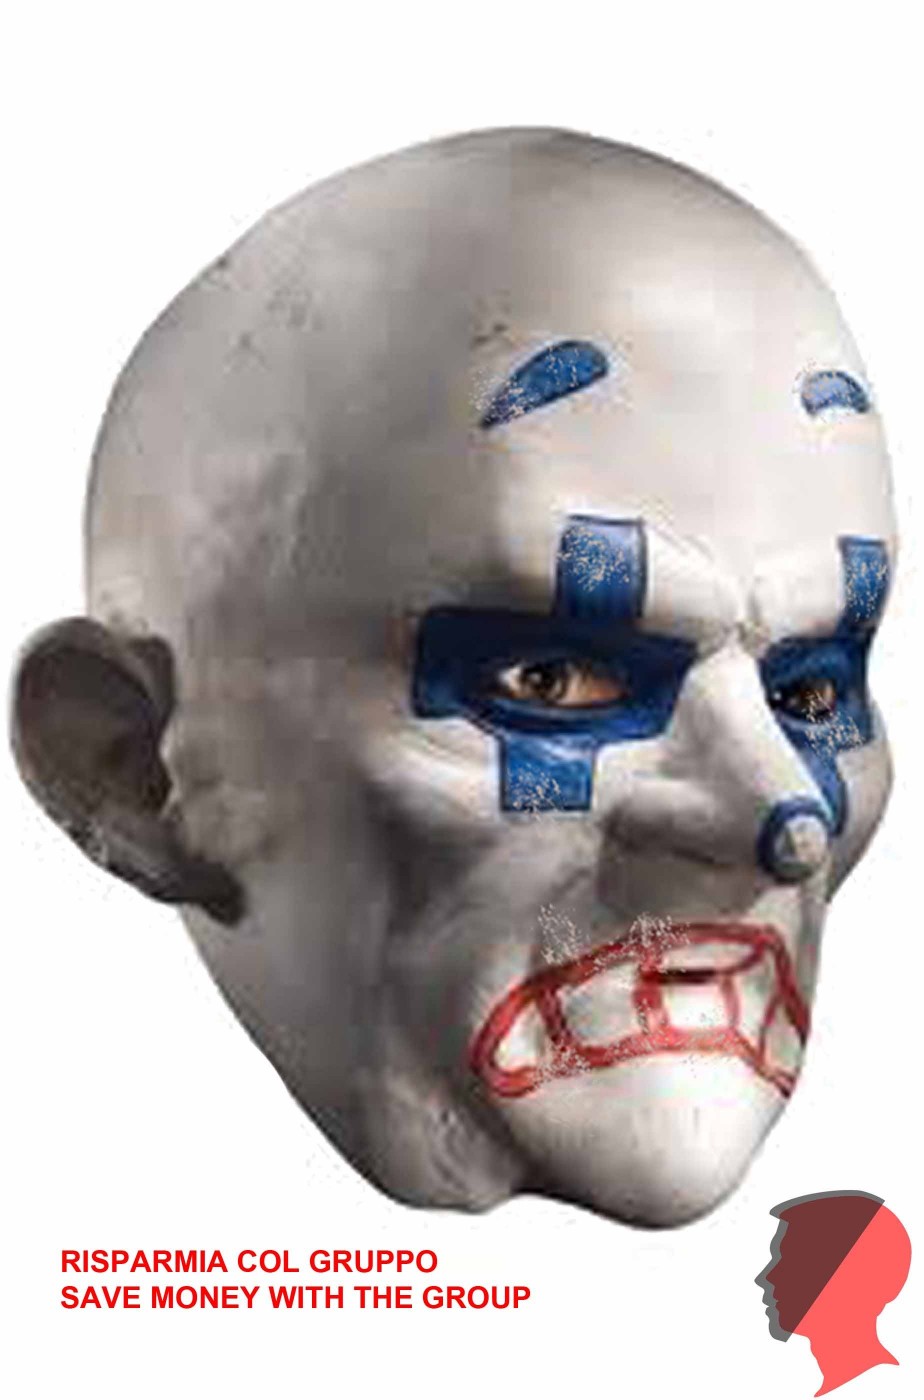 Maschera del clown del Joker della rapina alla banca Chuckles